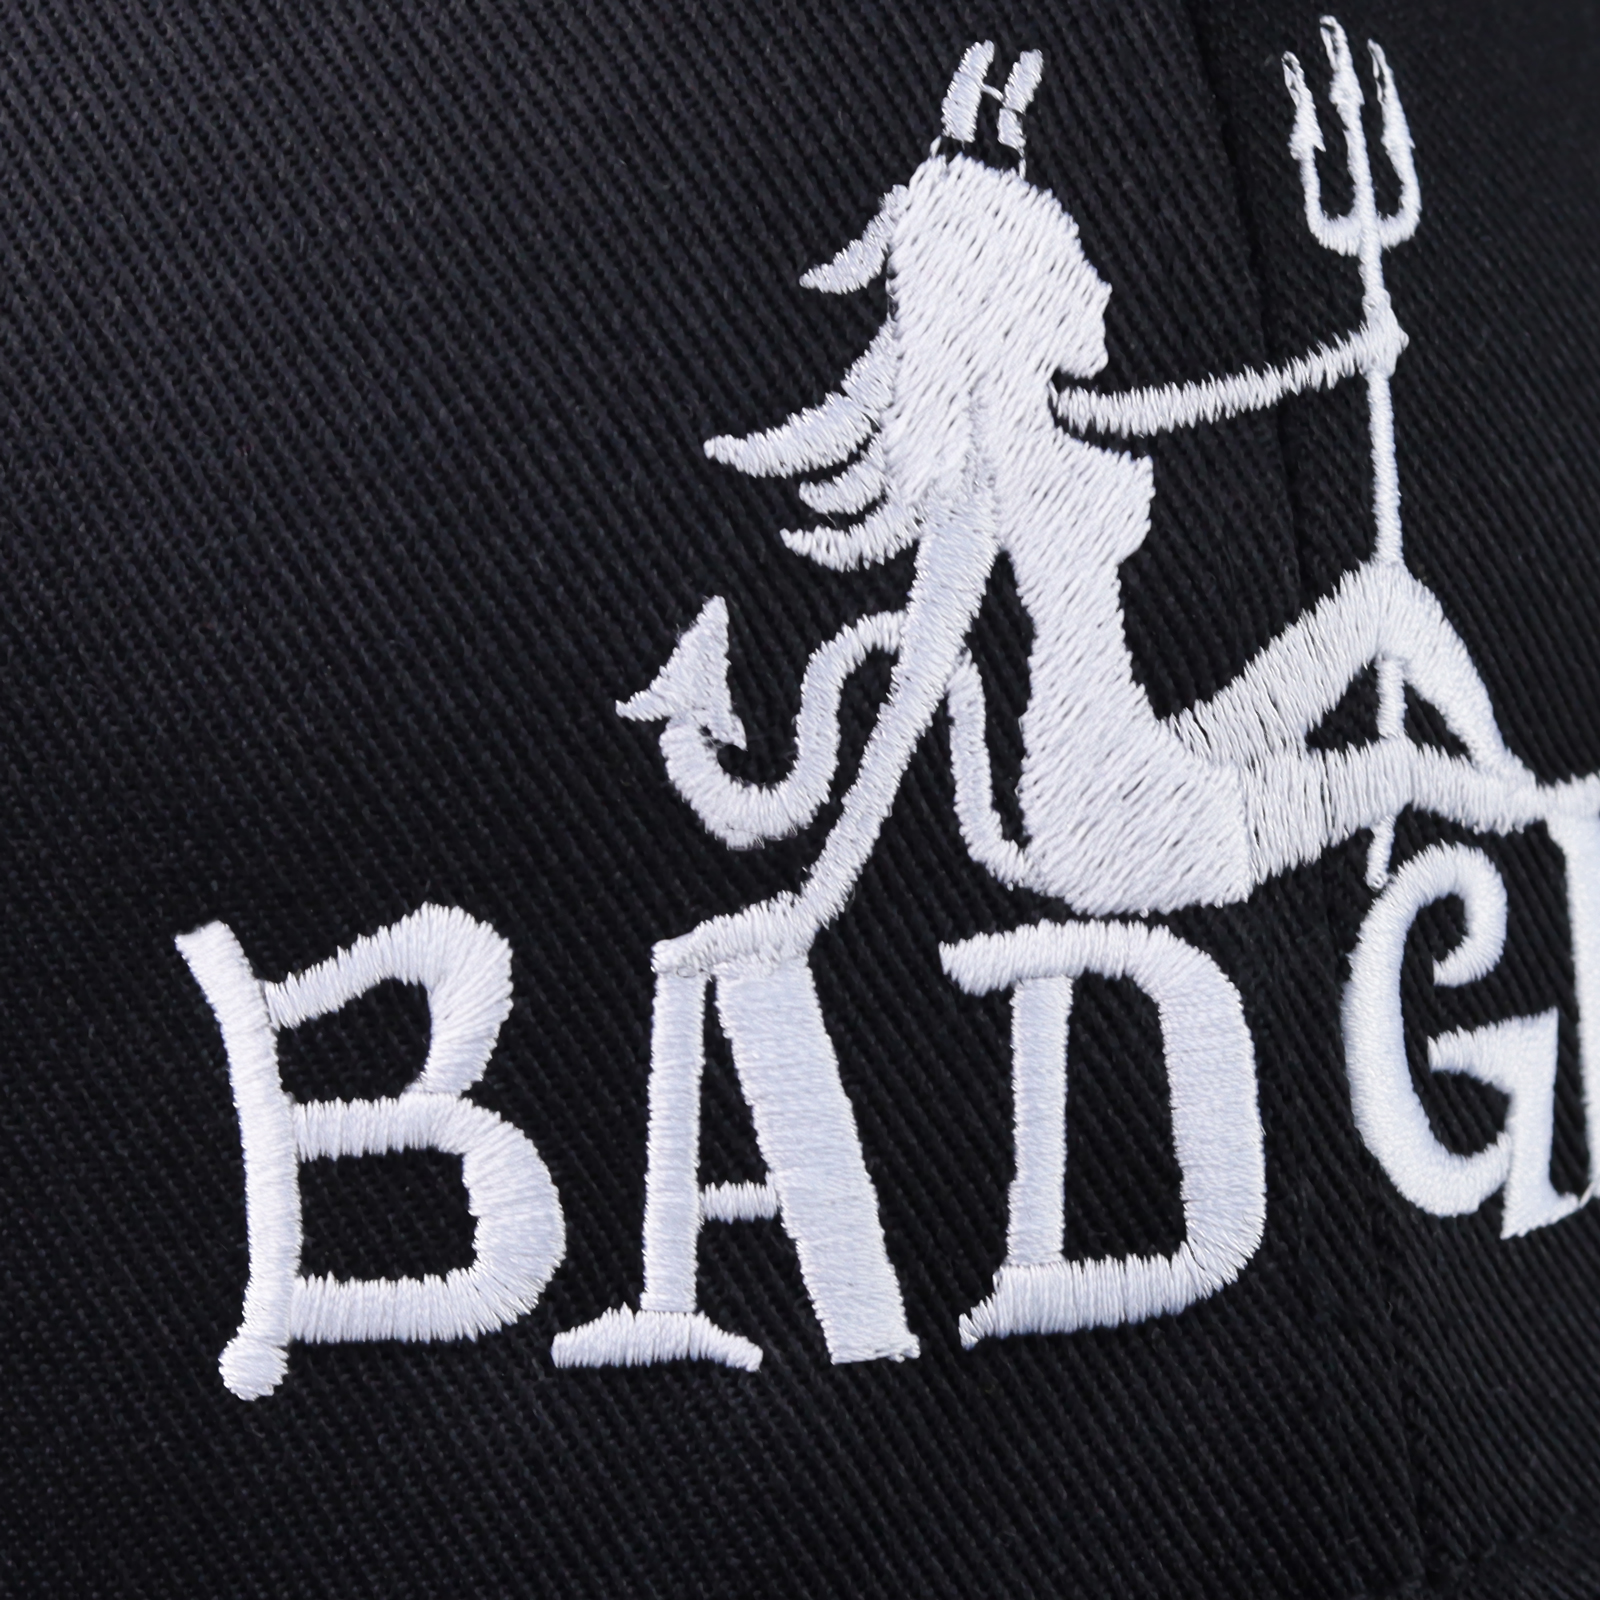 Bad Girl - Kappe